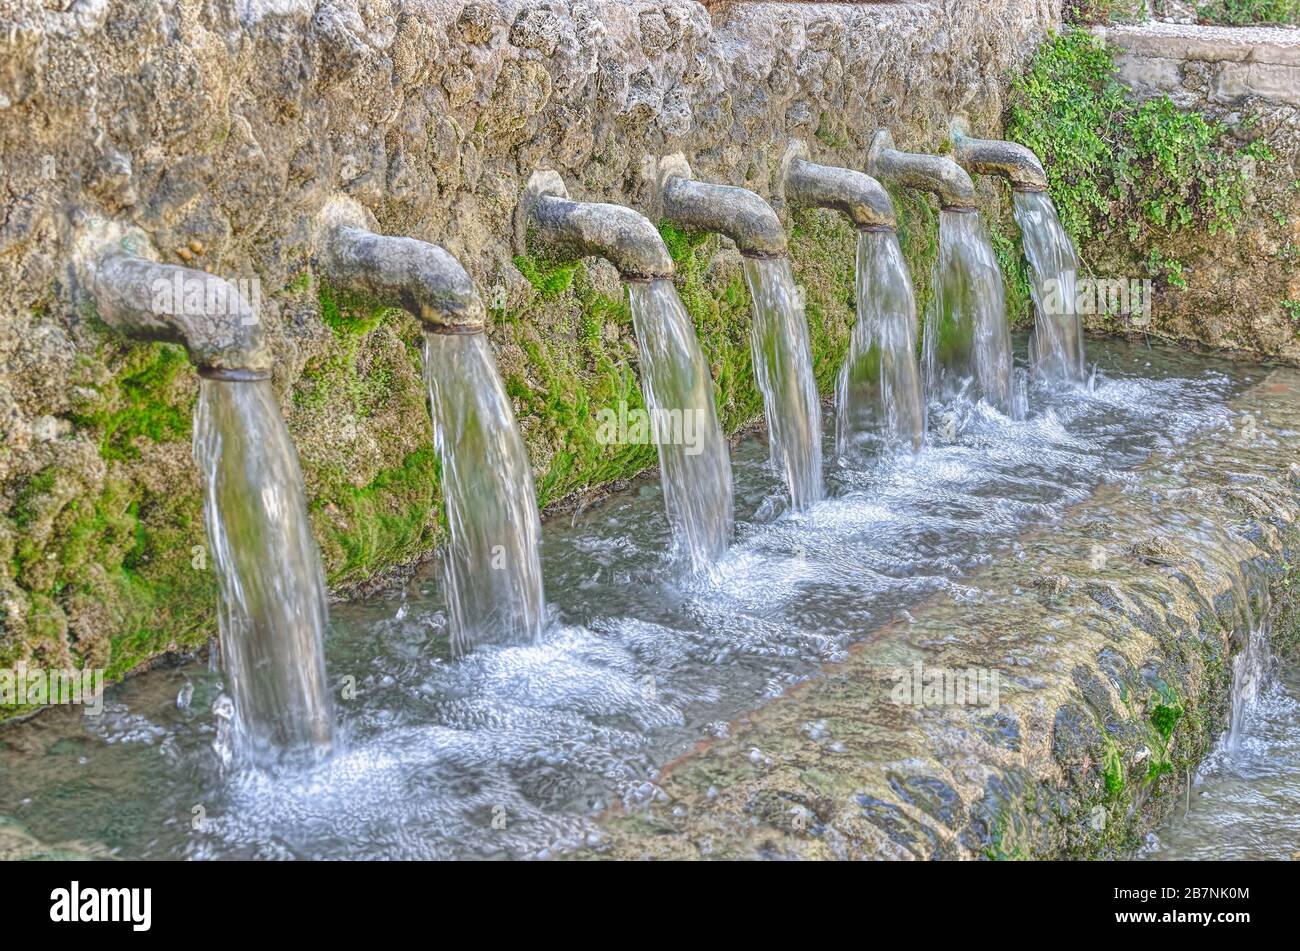 Springbrunnen mit sieben Zapfhähnen. Stark herabfallendes Wasser. Natürliche und frische Farbe. Stockfoto